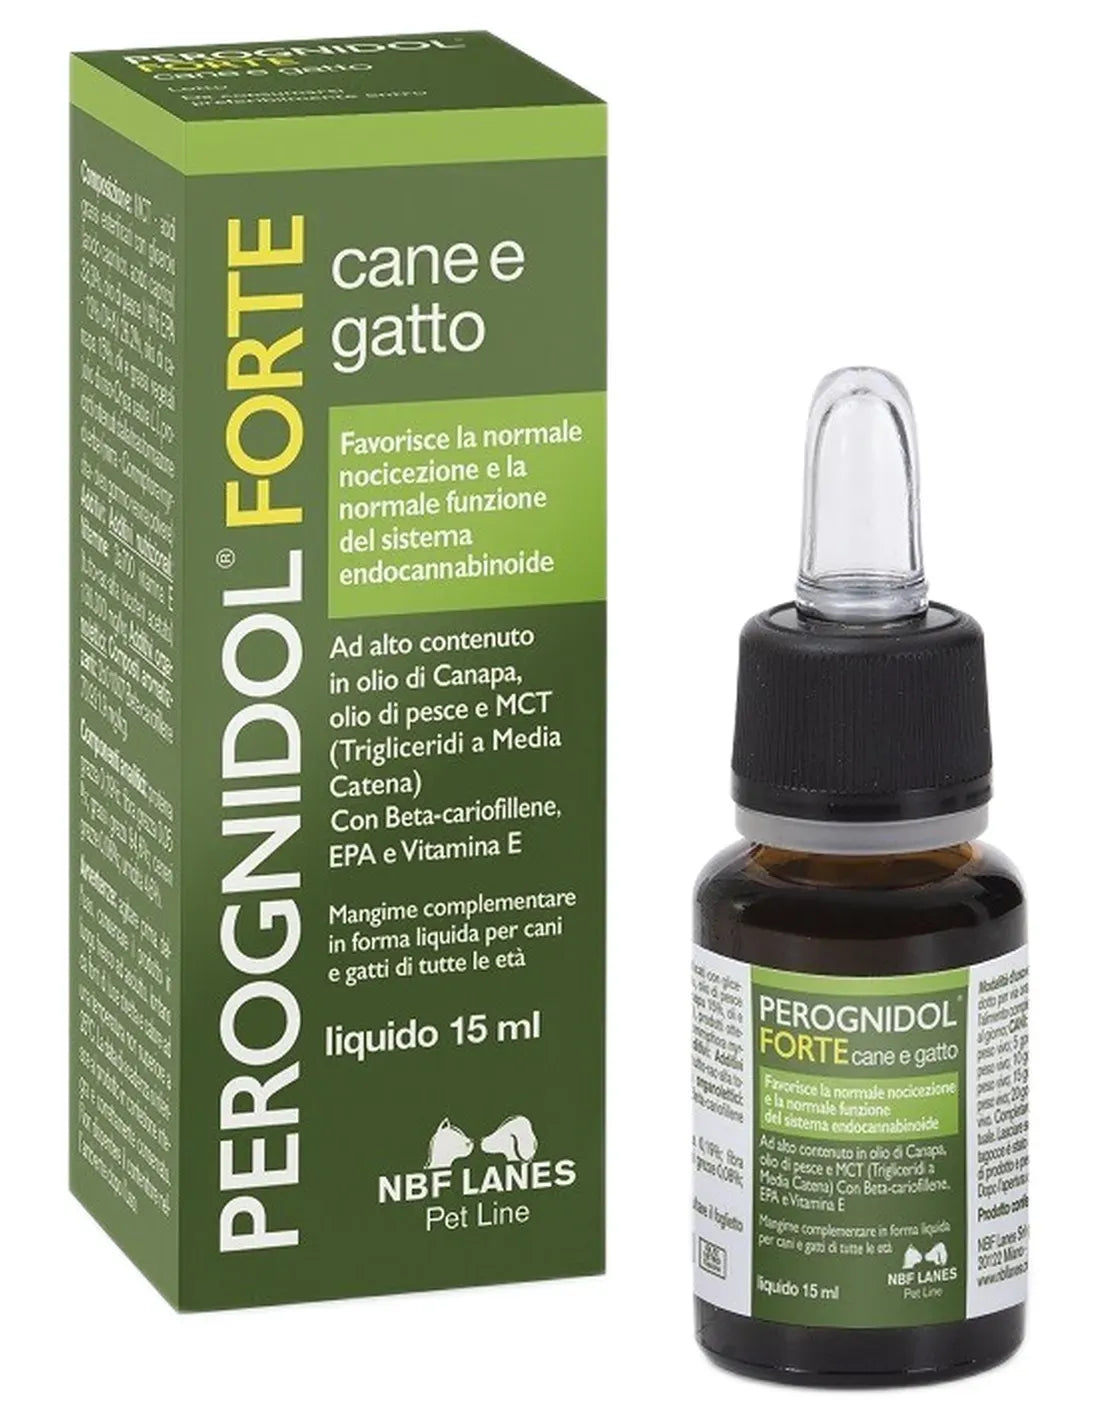 NBF LANES Perognidol Forte 15ml Integratore per Cane e Gatto